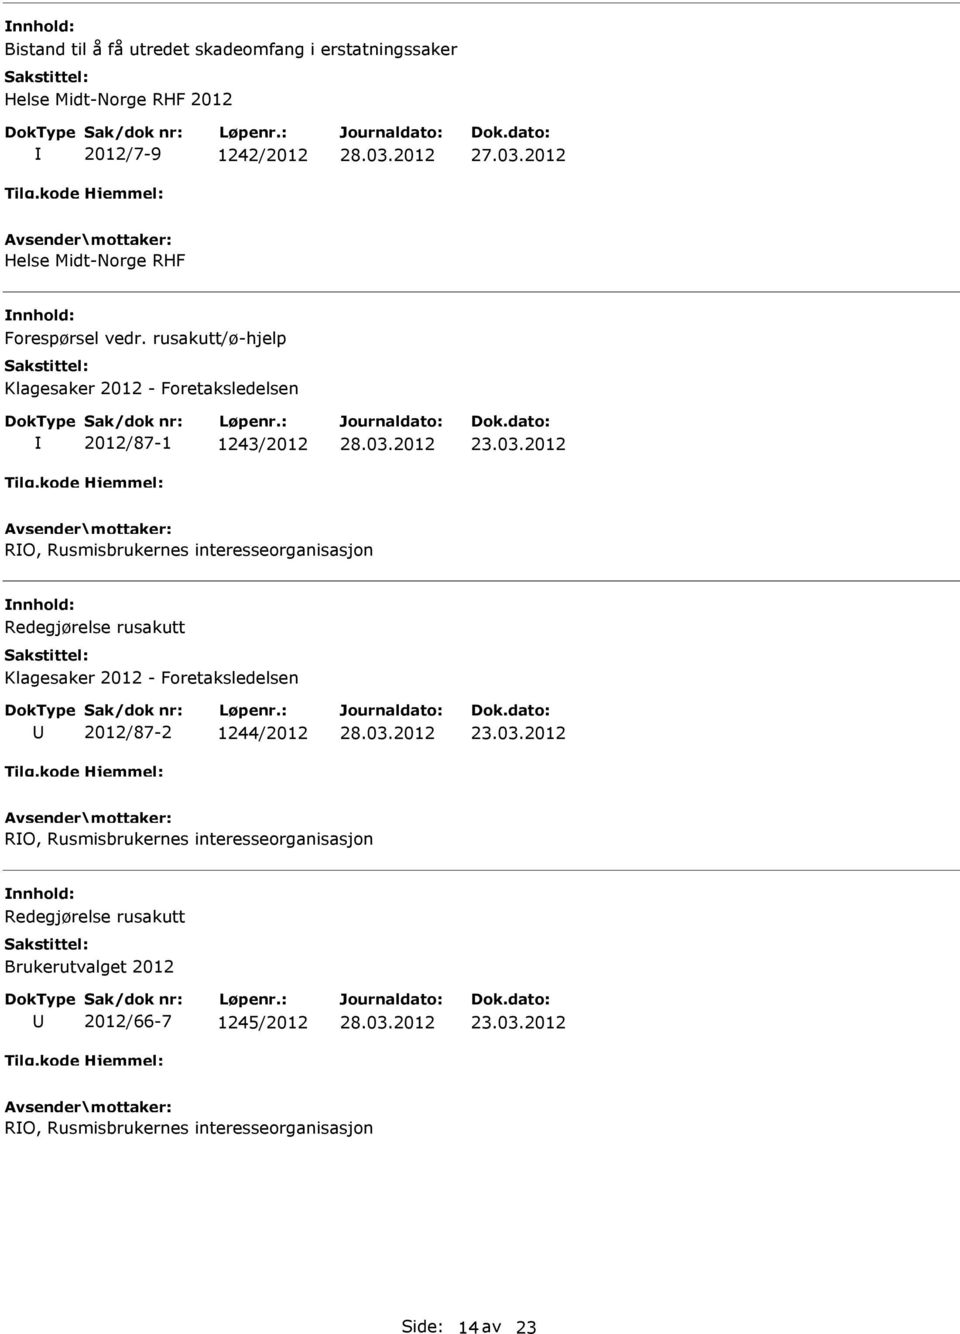 2012 RO, Rusmisbrukernes interesseorganisasjon Redegjørelse rusakutt Klagesaker 2012 - Foretaksledelsen 2012/87-2 1244/2012 23.03.